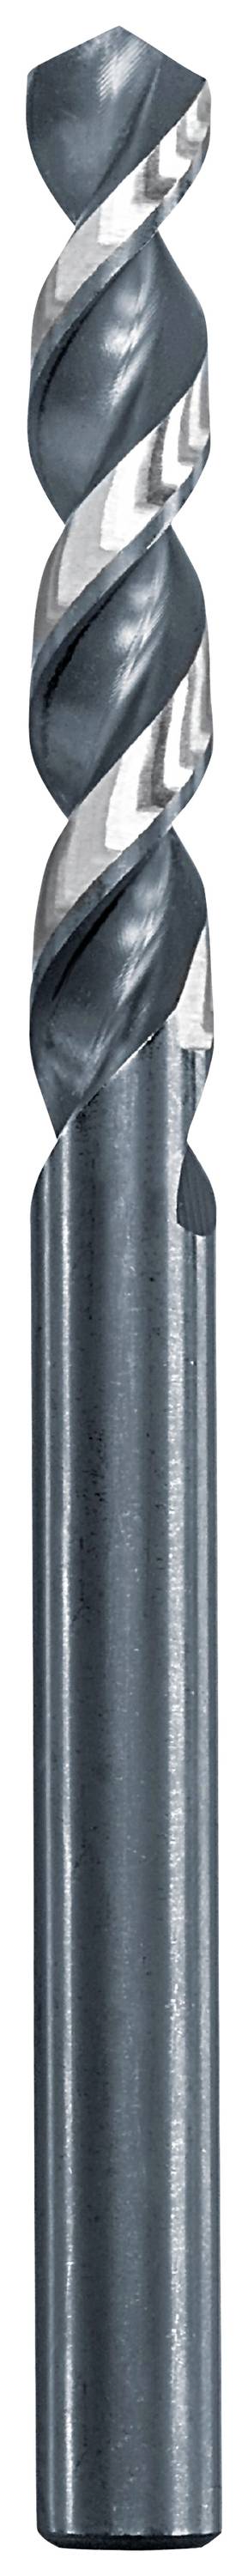 KWB 258625 Metall-Spiralbohrer 2.5 mm Gesamtlänge 57 mm 1 St.